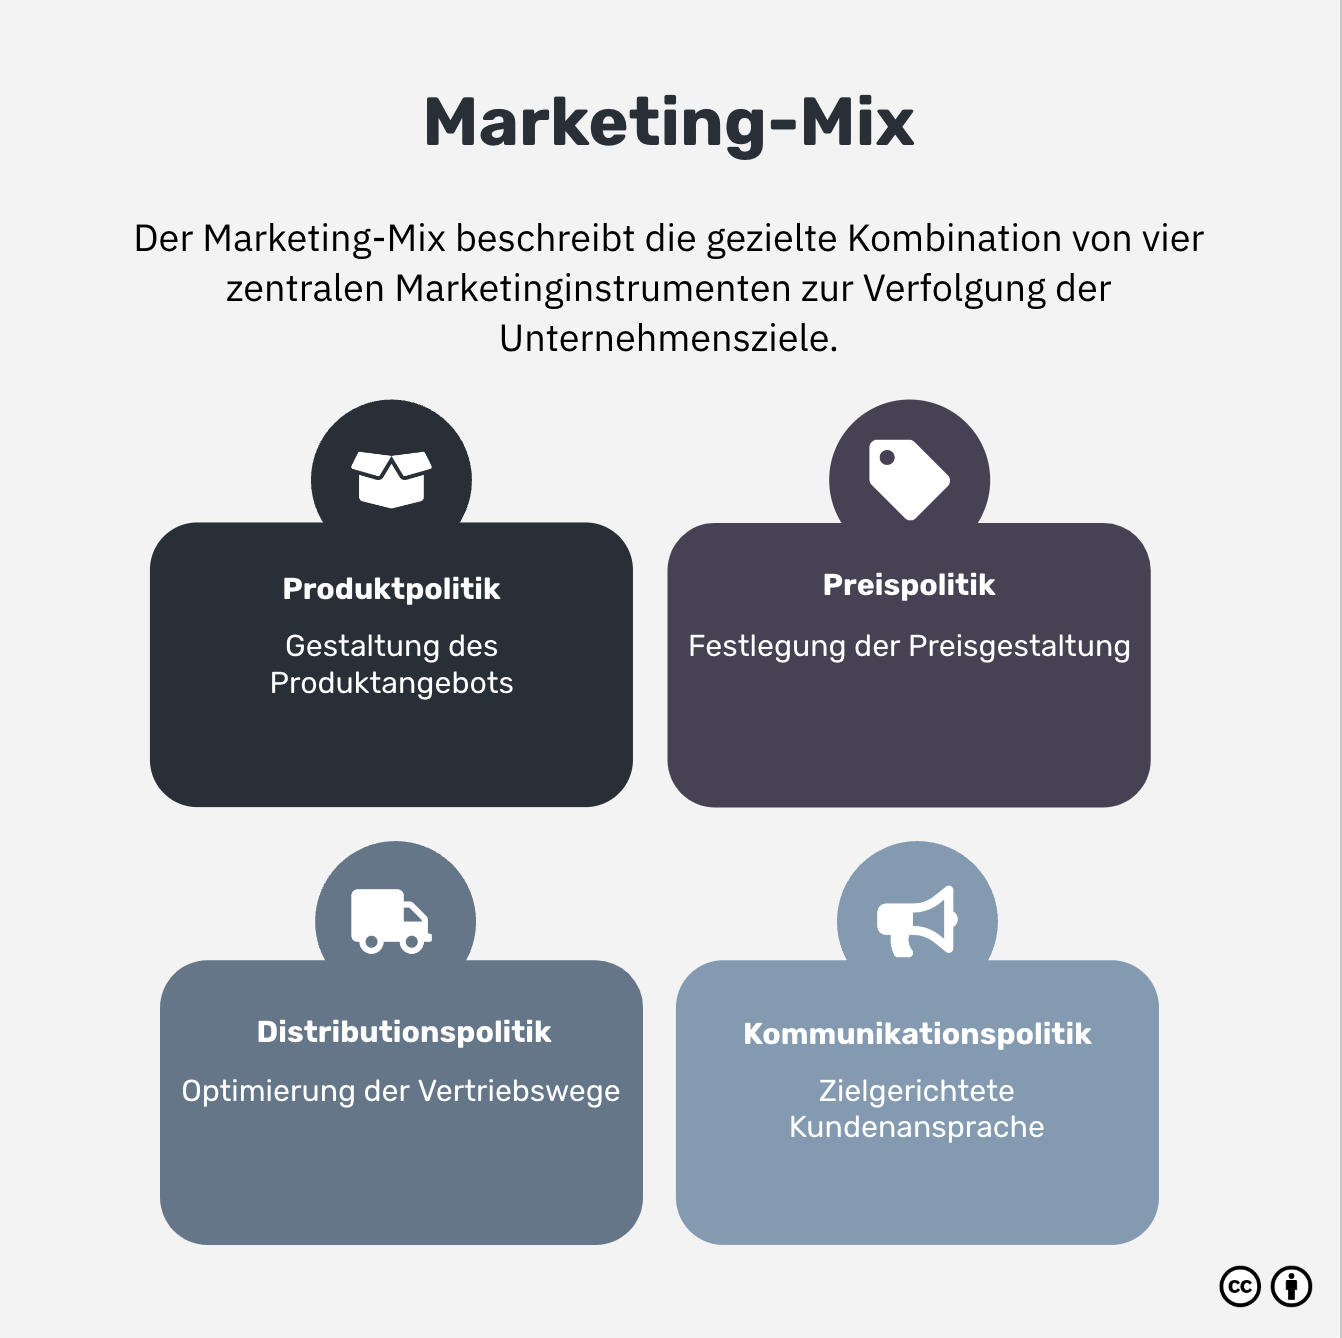 Was ist der Marketing-Mix?